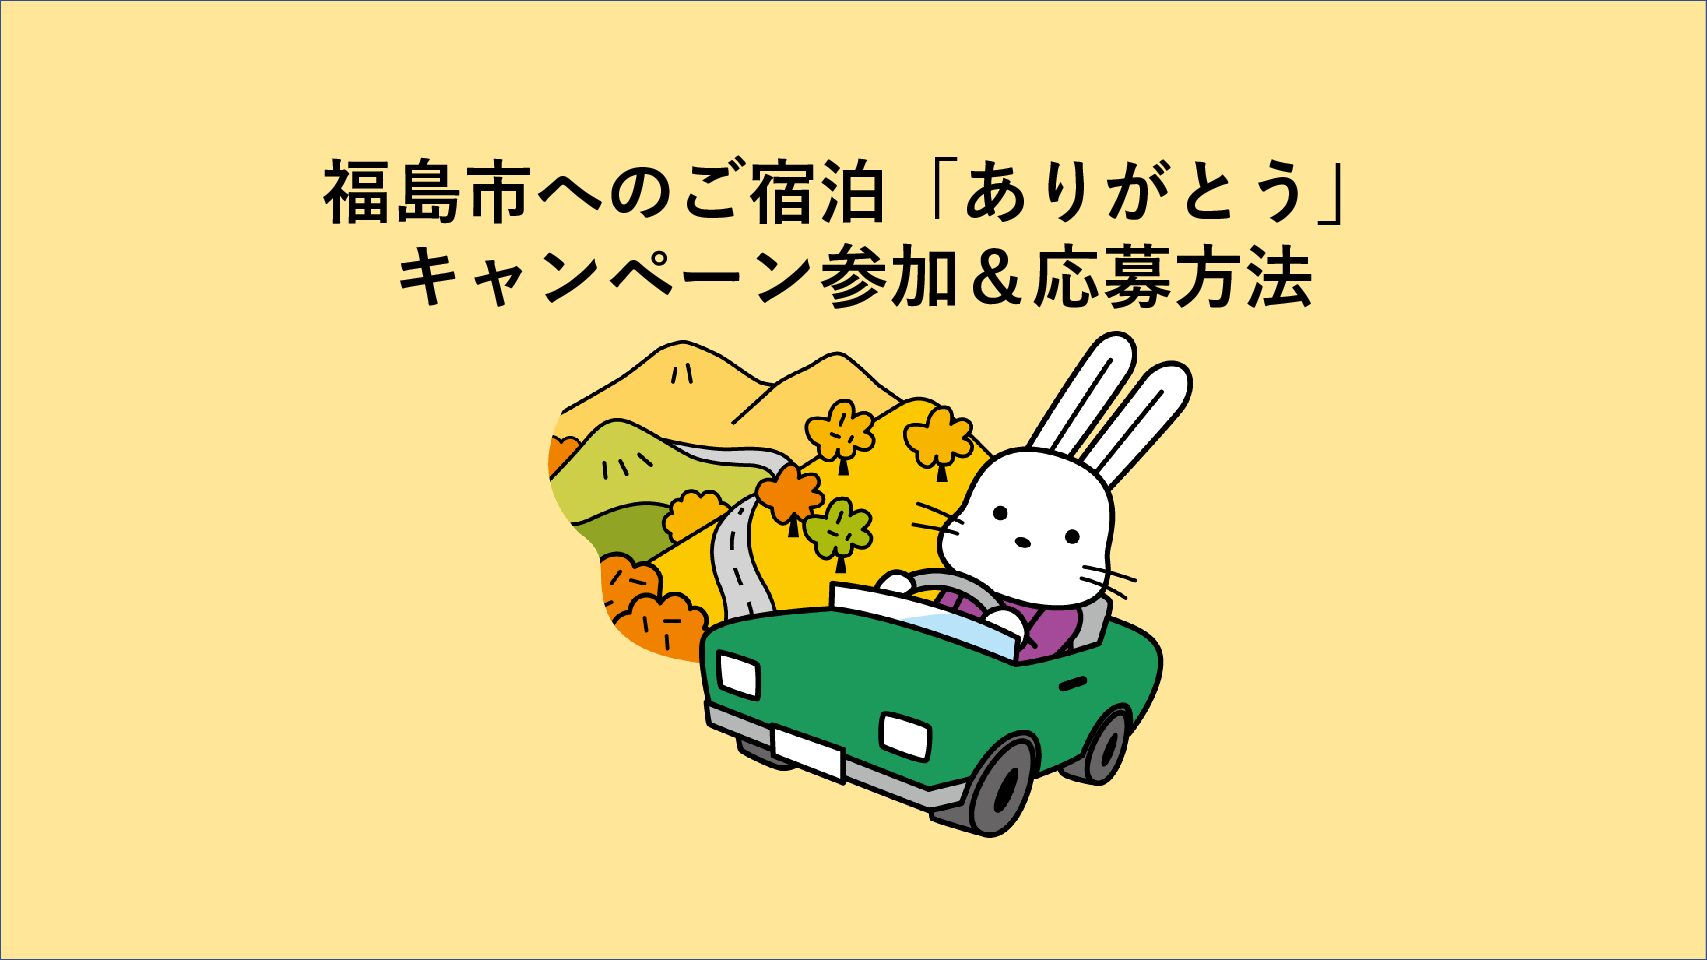 参加&応募方法〜福島市への宿泊「ありがとう」キャンペーン